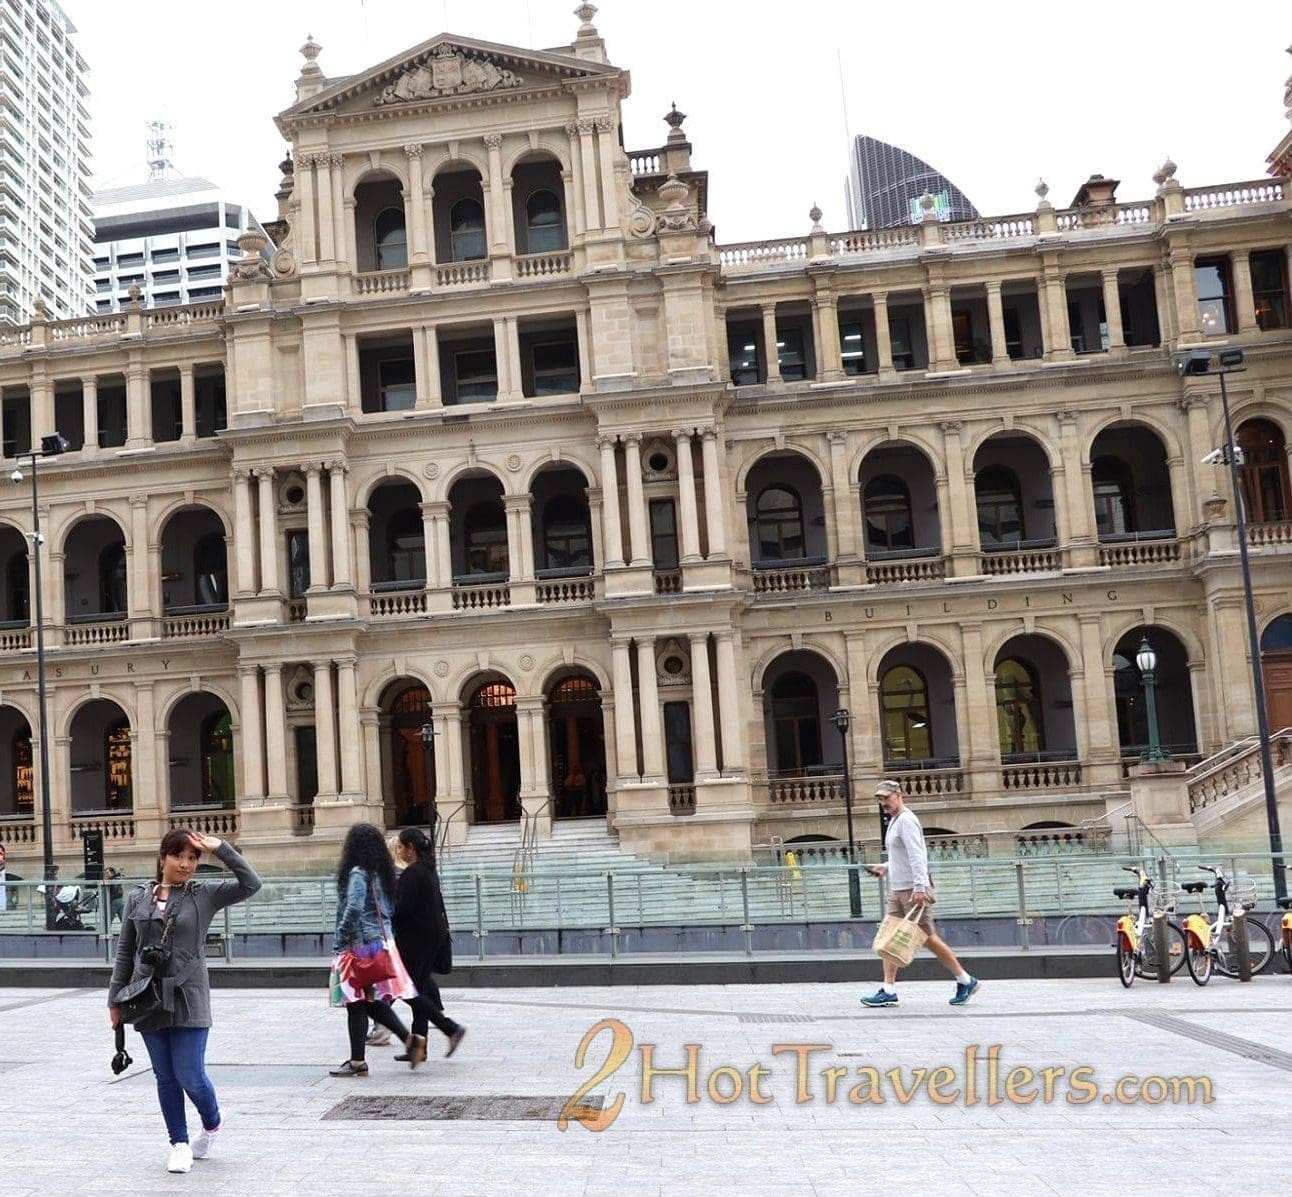 Brisbane City Treasury Building